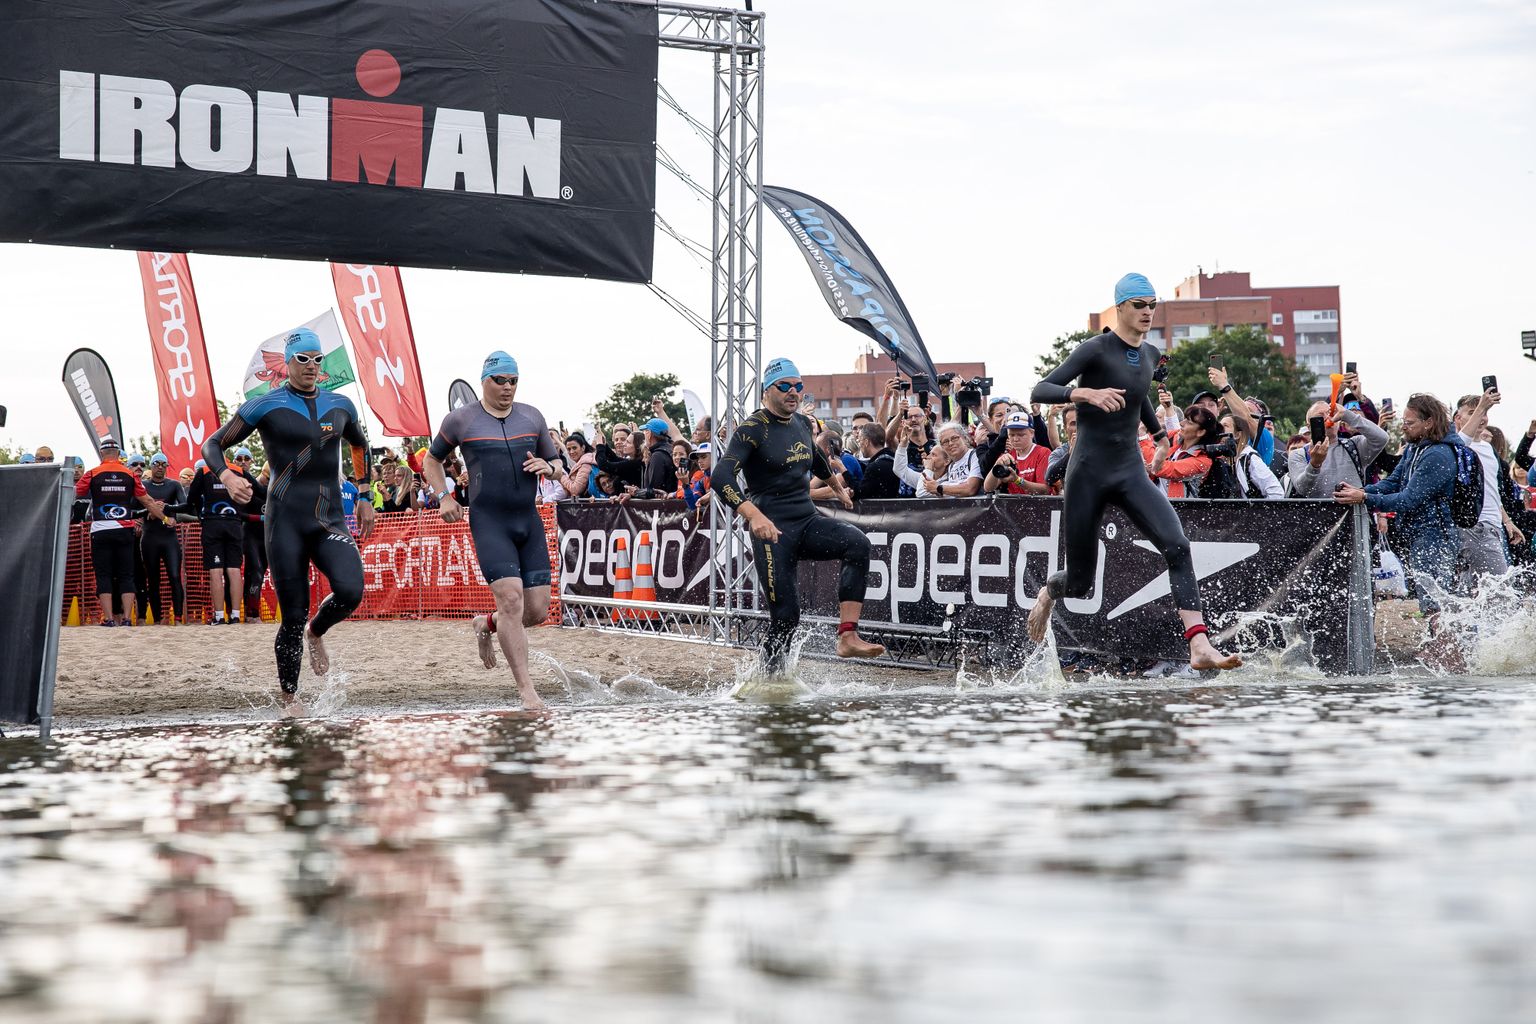 Kui tavaliselt põhjustab triatlonivõistlusel enim segadust avaala ehk ujumine, siis Tallinna Ironmanil osutus selleks hoopis jooksudistants.